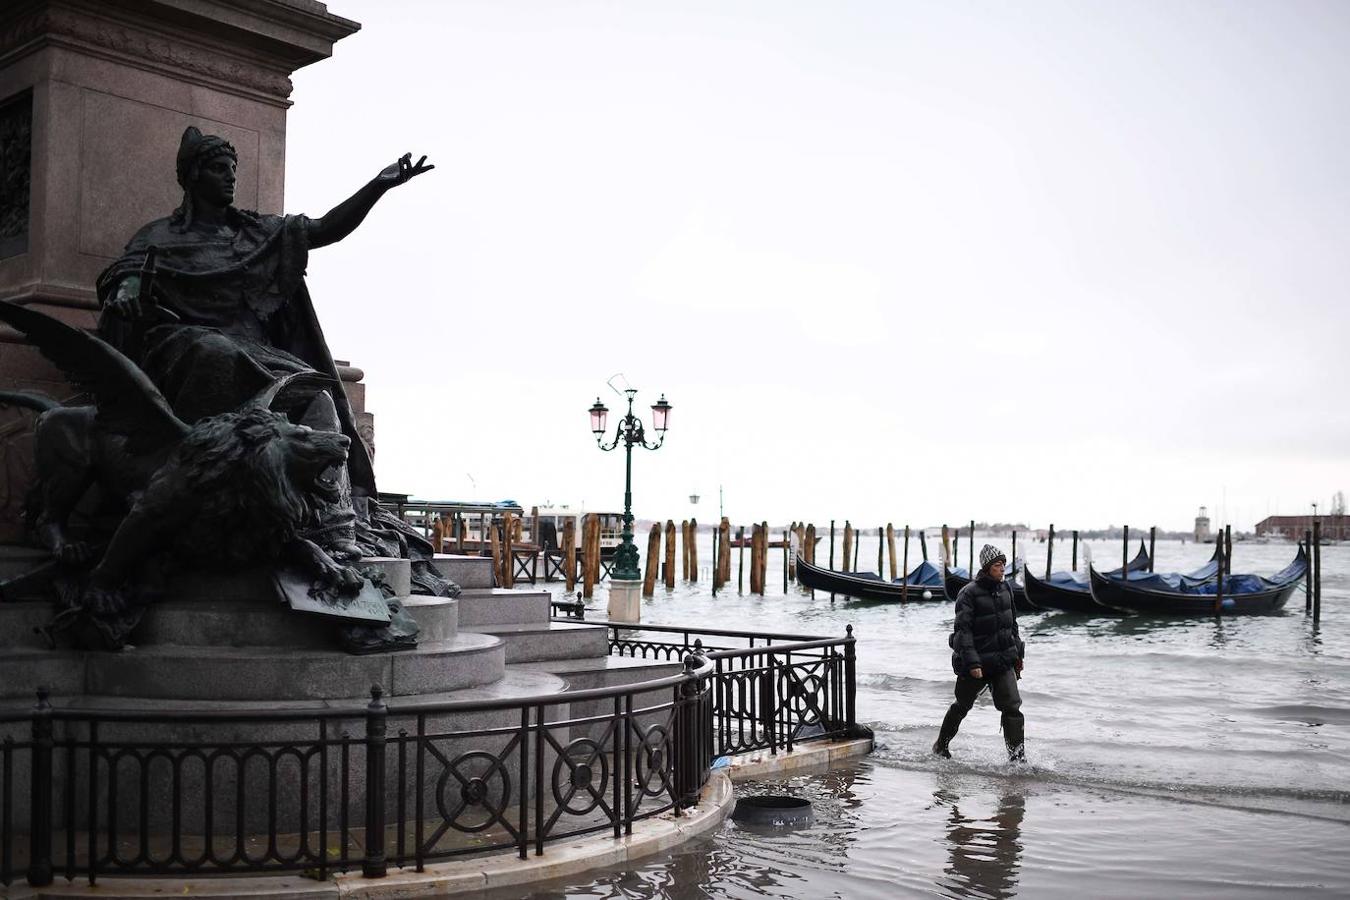 Una vista general muestra el Palacio Ducal (i) con vistas a la Plaza de San Marcos inundada, la estatua de bronce alada del León de San Marcos, las góndolas y la laguna veneciana.